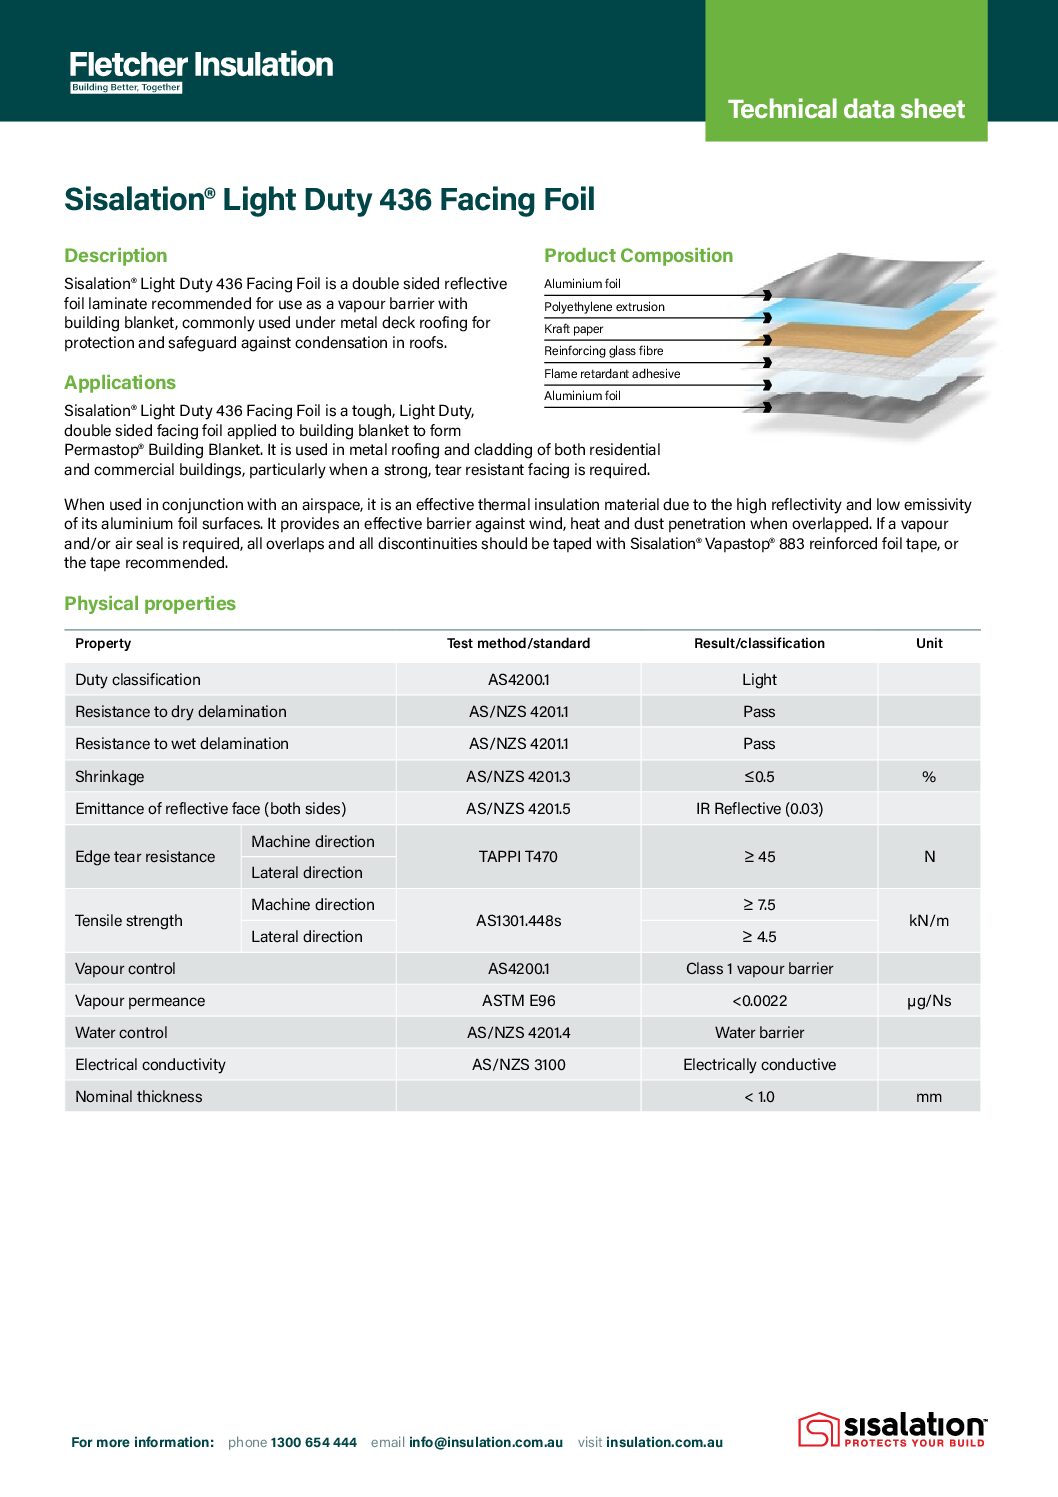 Sisalation® Light Duty 436 Facing Foil Technical Data Sheet